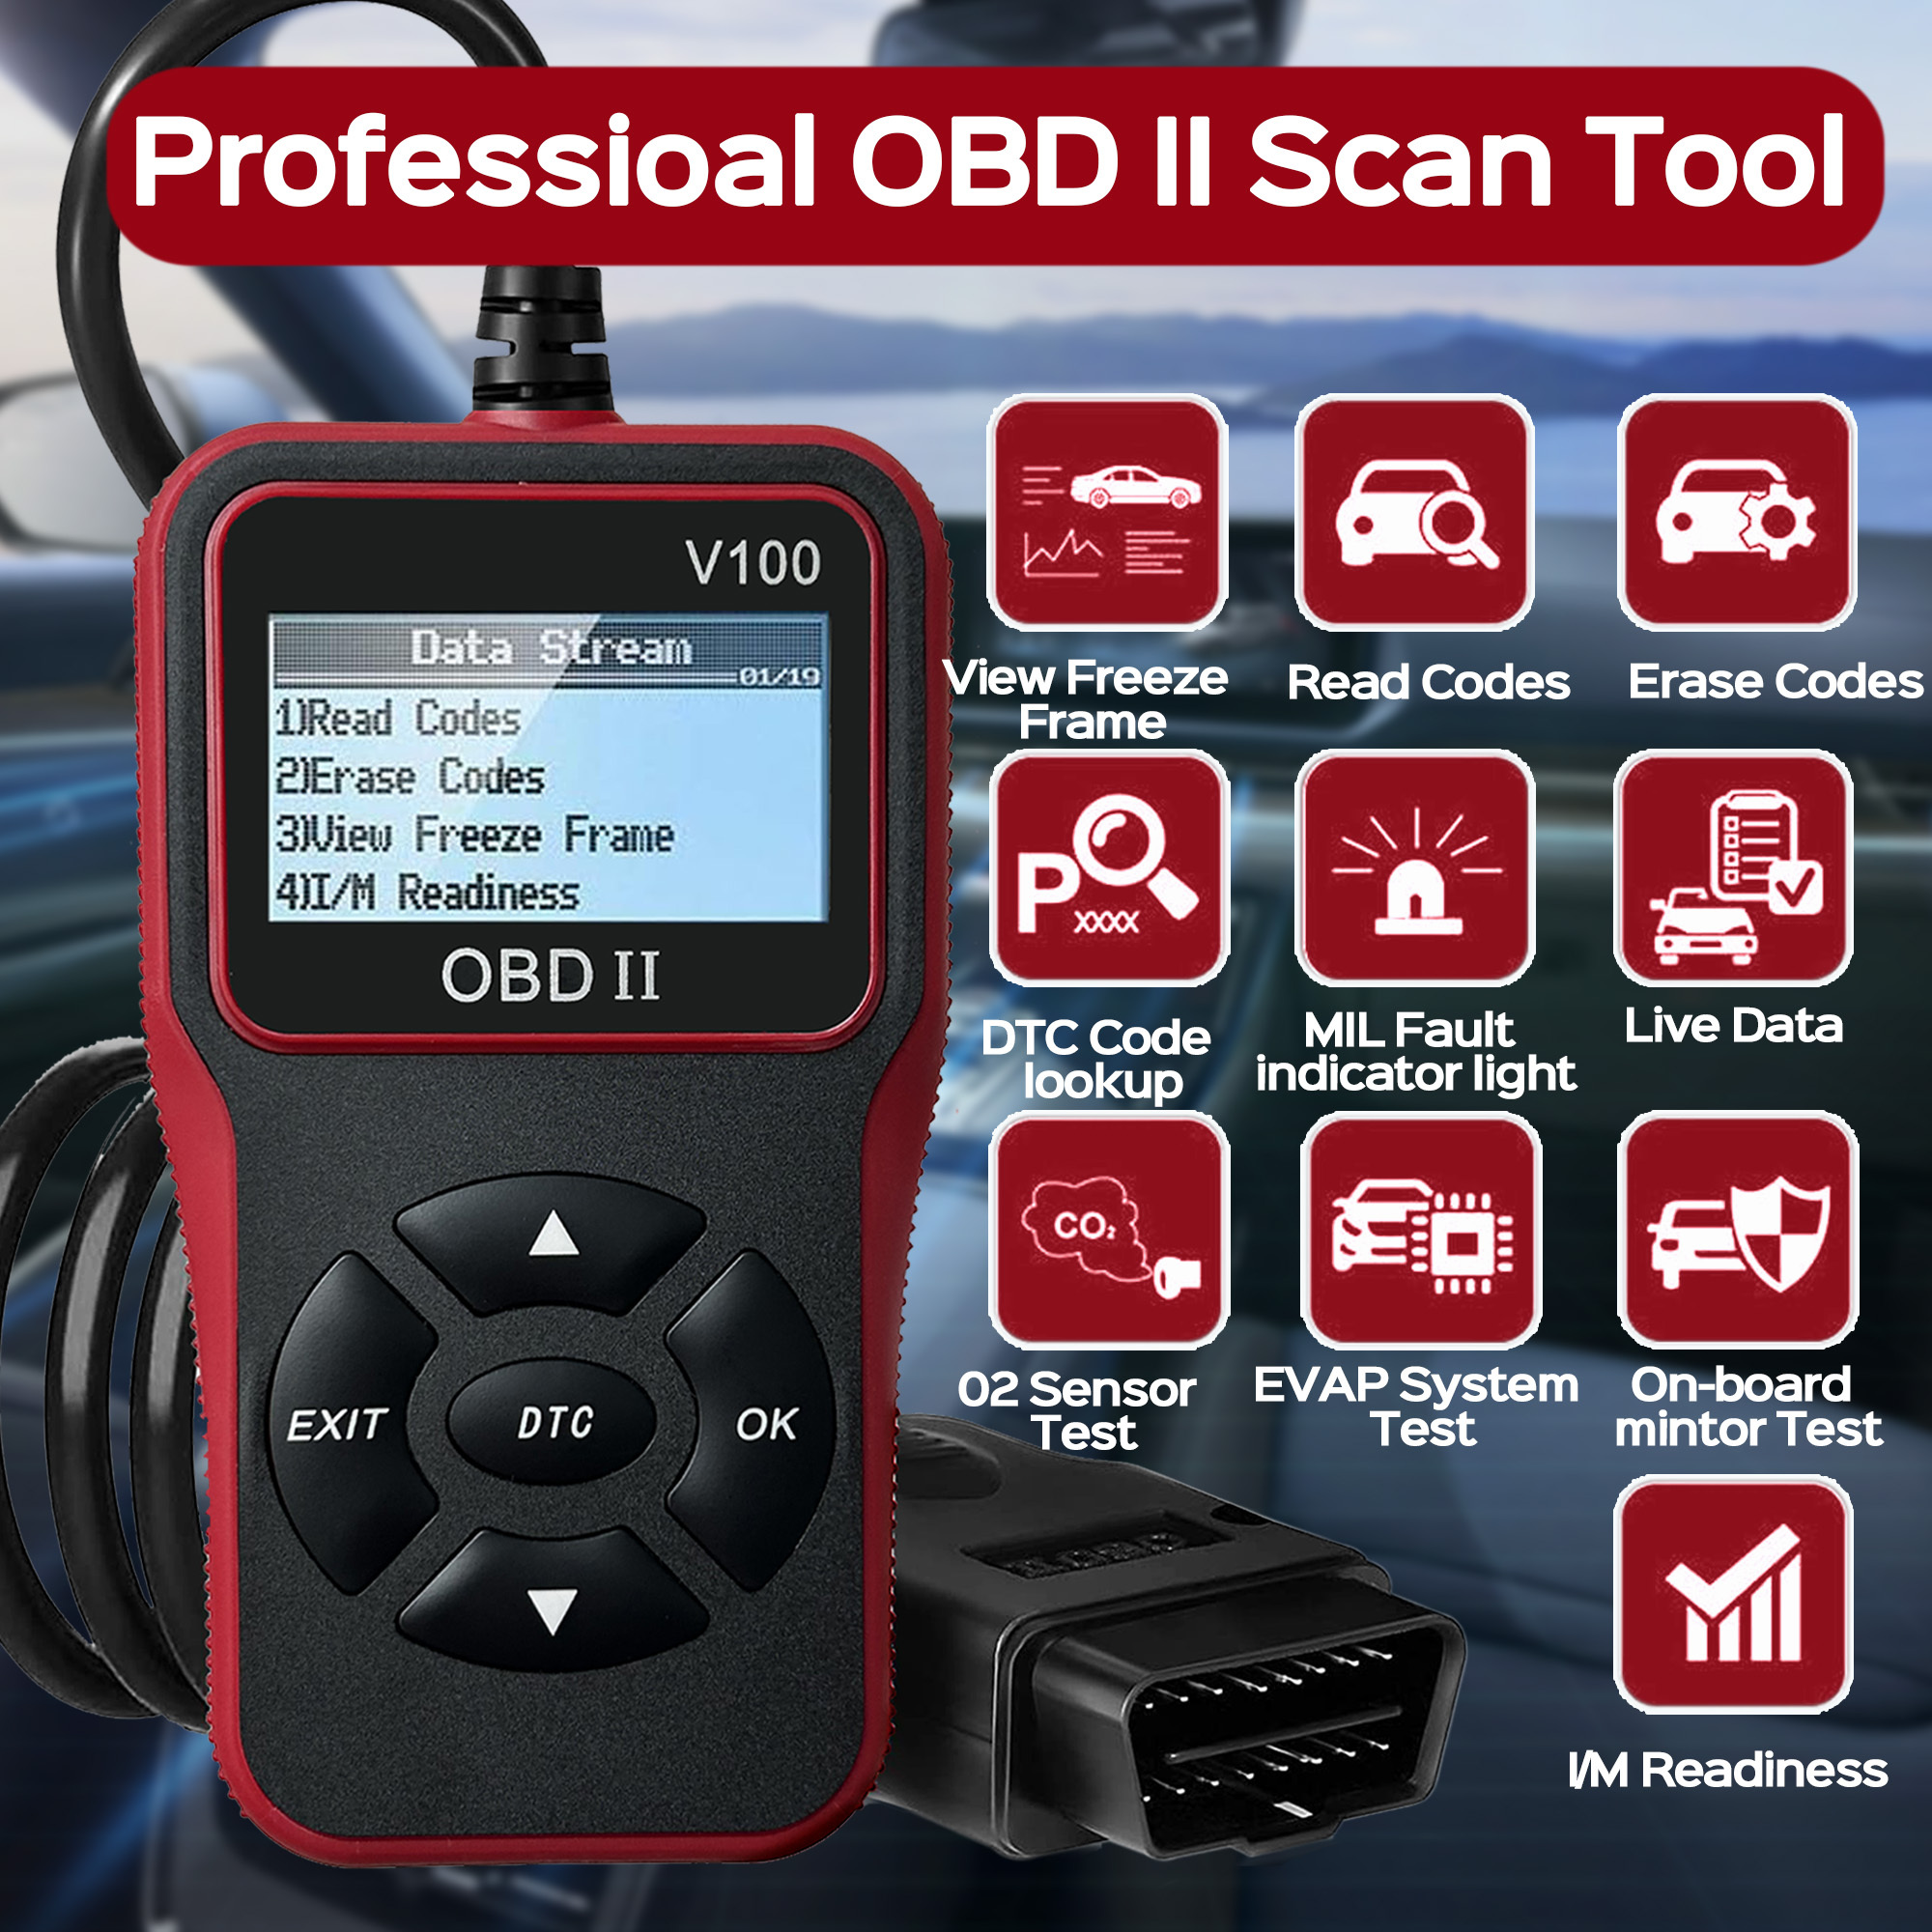 Lector de código de escáner OBD2 para coche M301, lector de código de error  de motor, herramienta de escaneo de diagnóstico CAN para todos los coches  con protocolo OBD II desde 1996